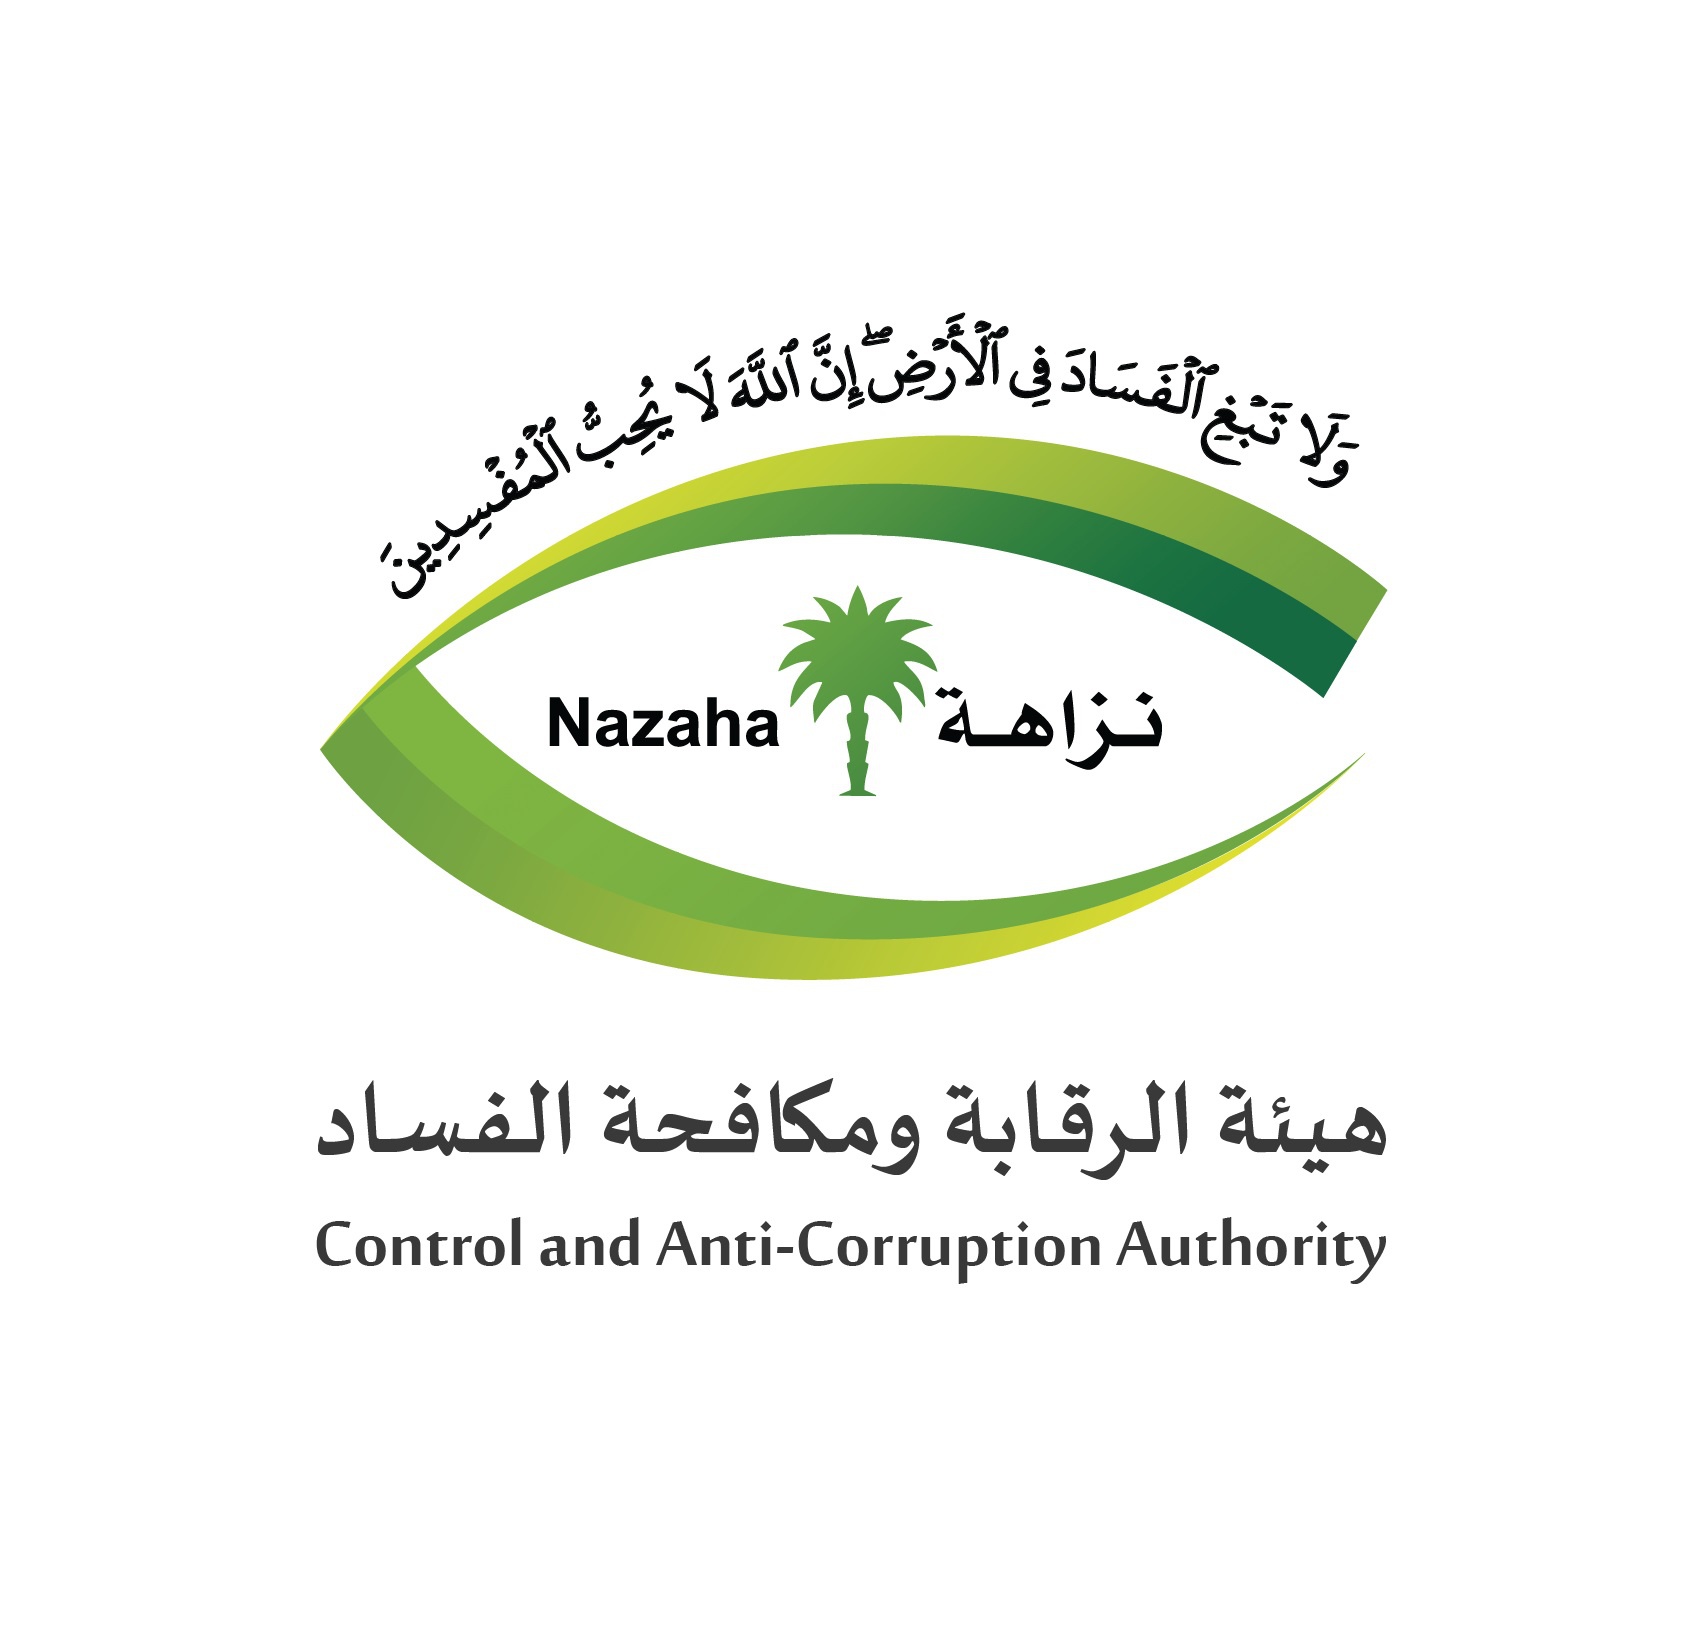 △沙特控制和打击腐败总机构标识，来自其官方网站